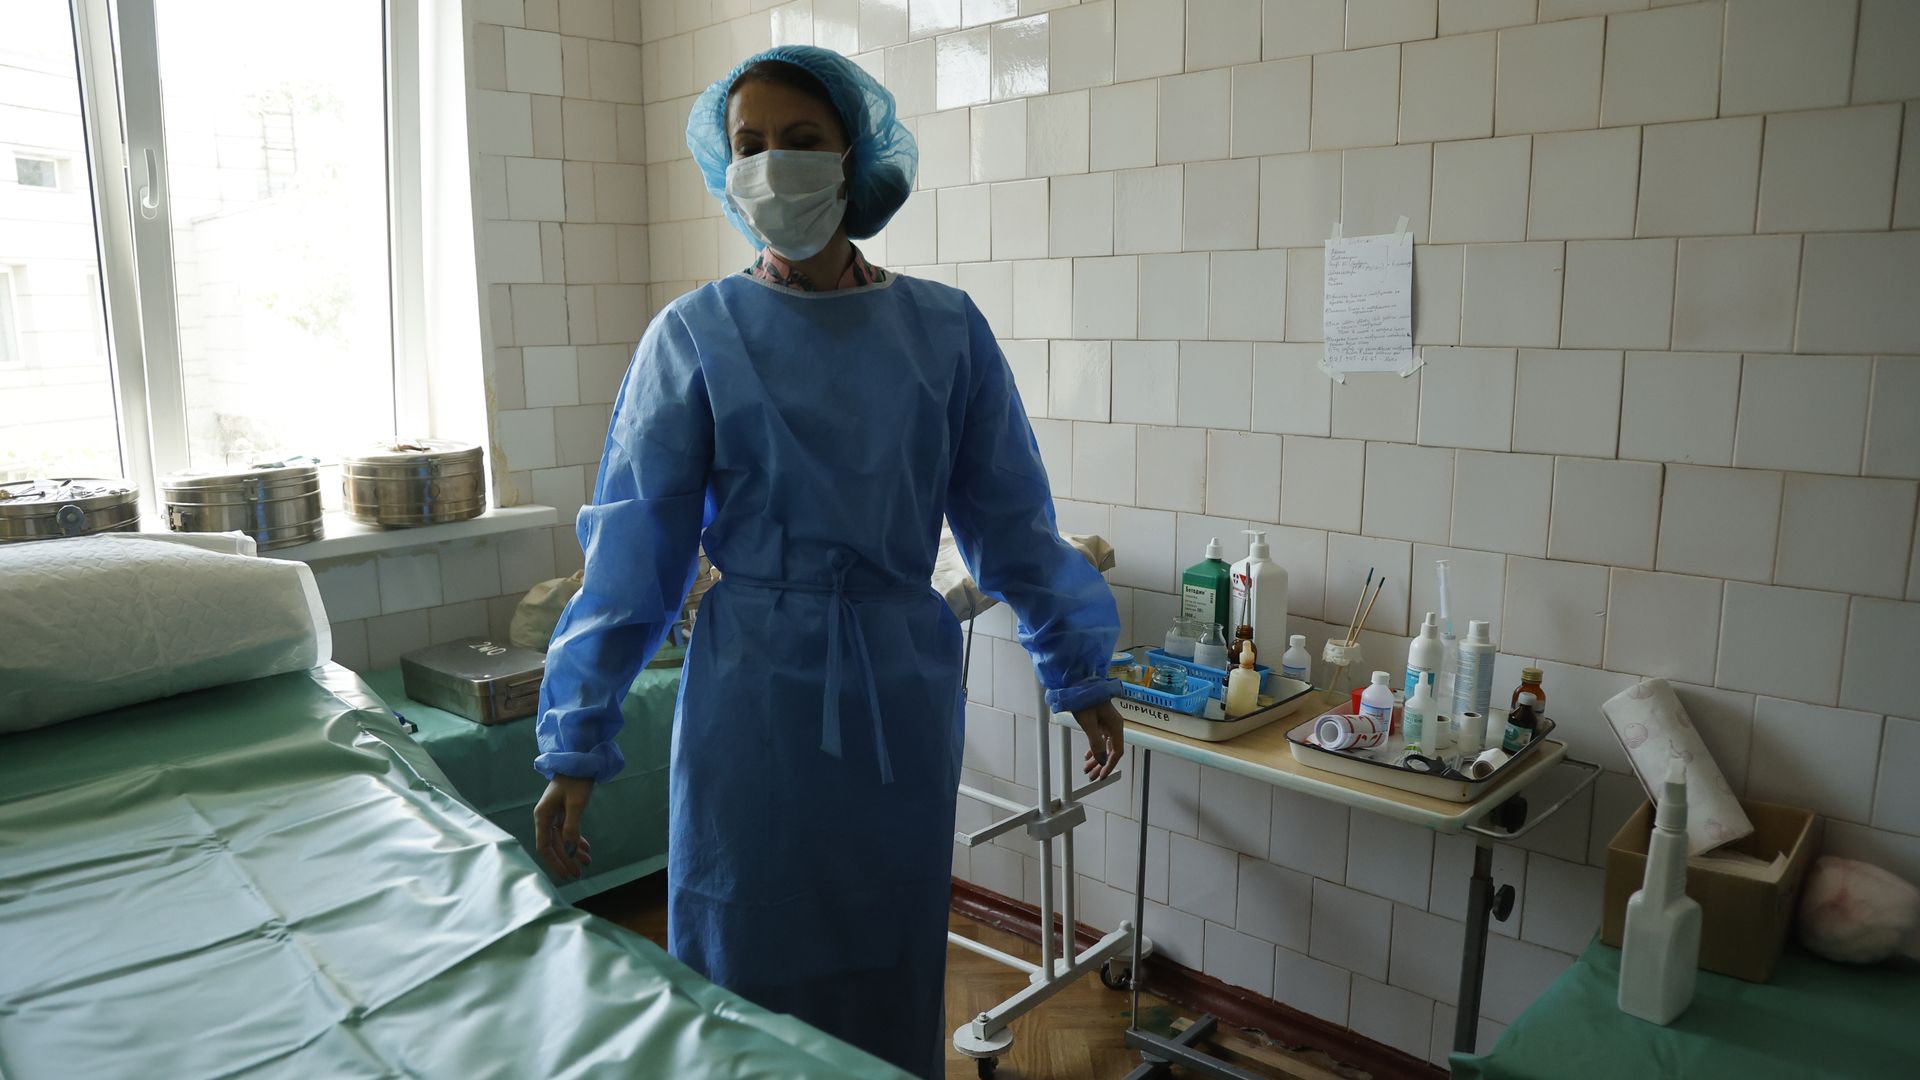 Ukrainian health worker